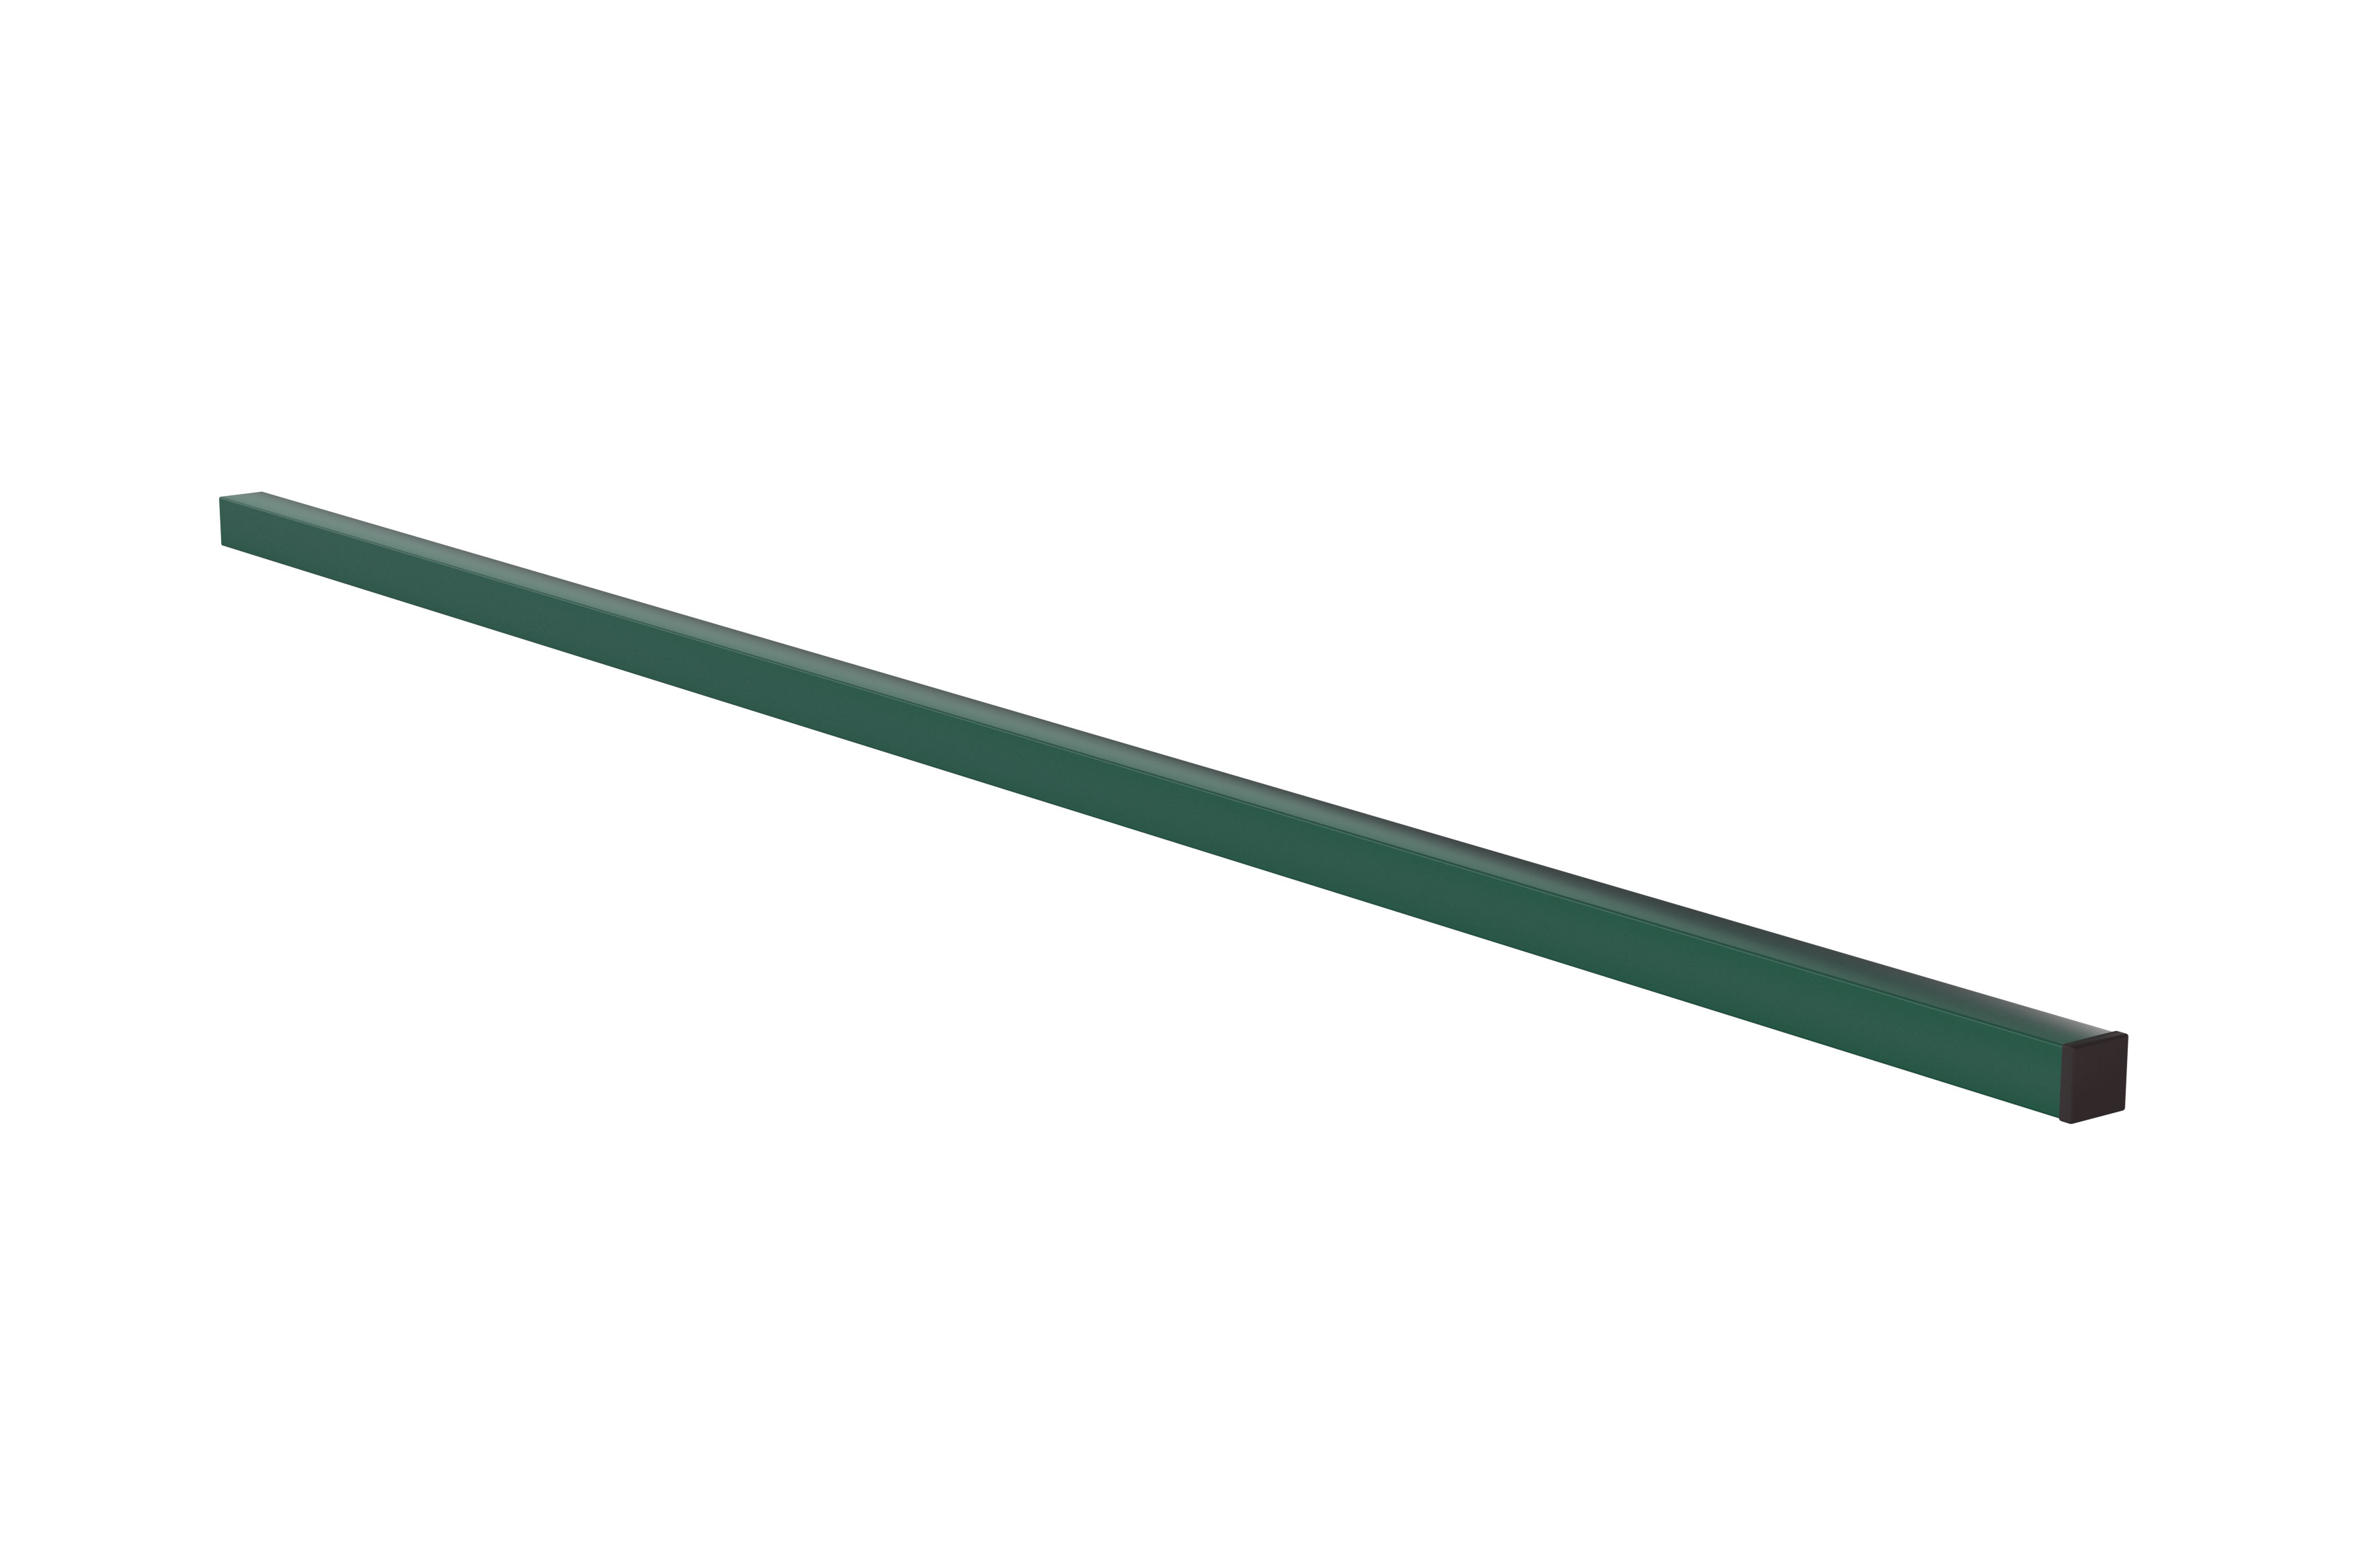  Столб 60*60*1,5мм/ 3,0м ППК RAL 6005, 6005 (зелёный)